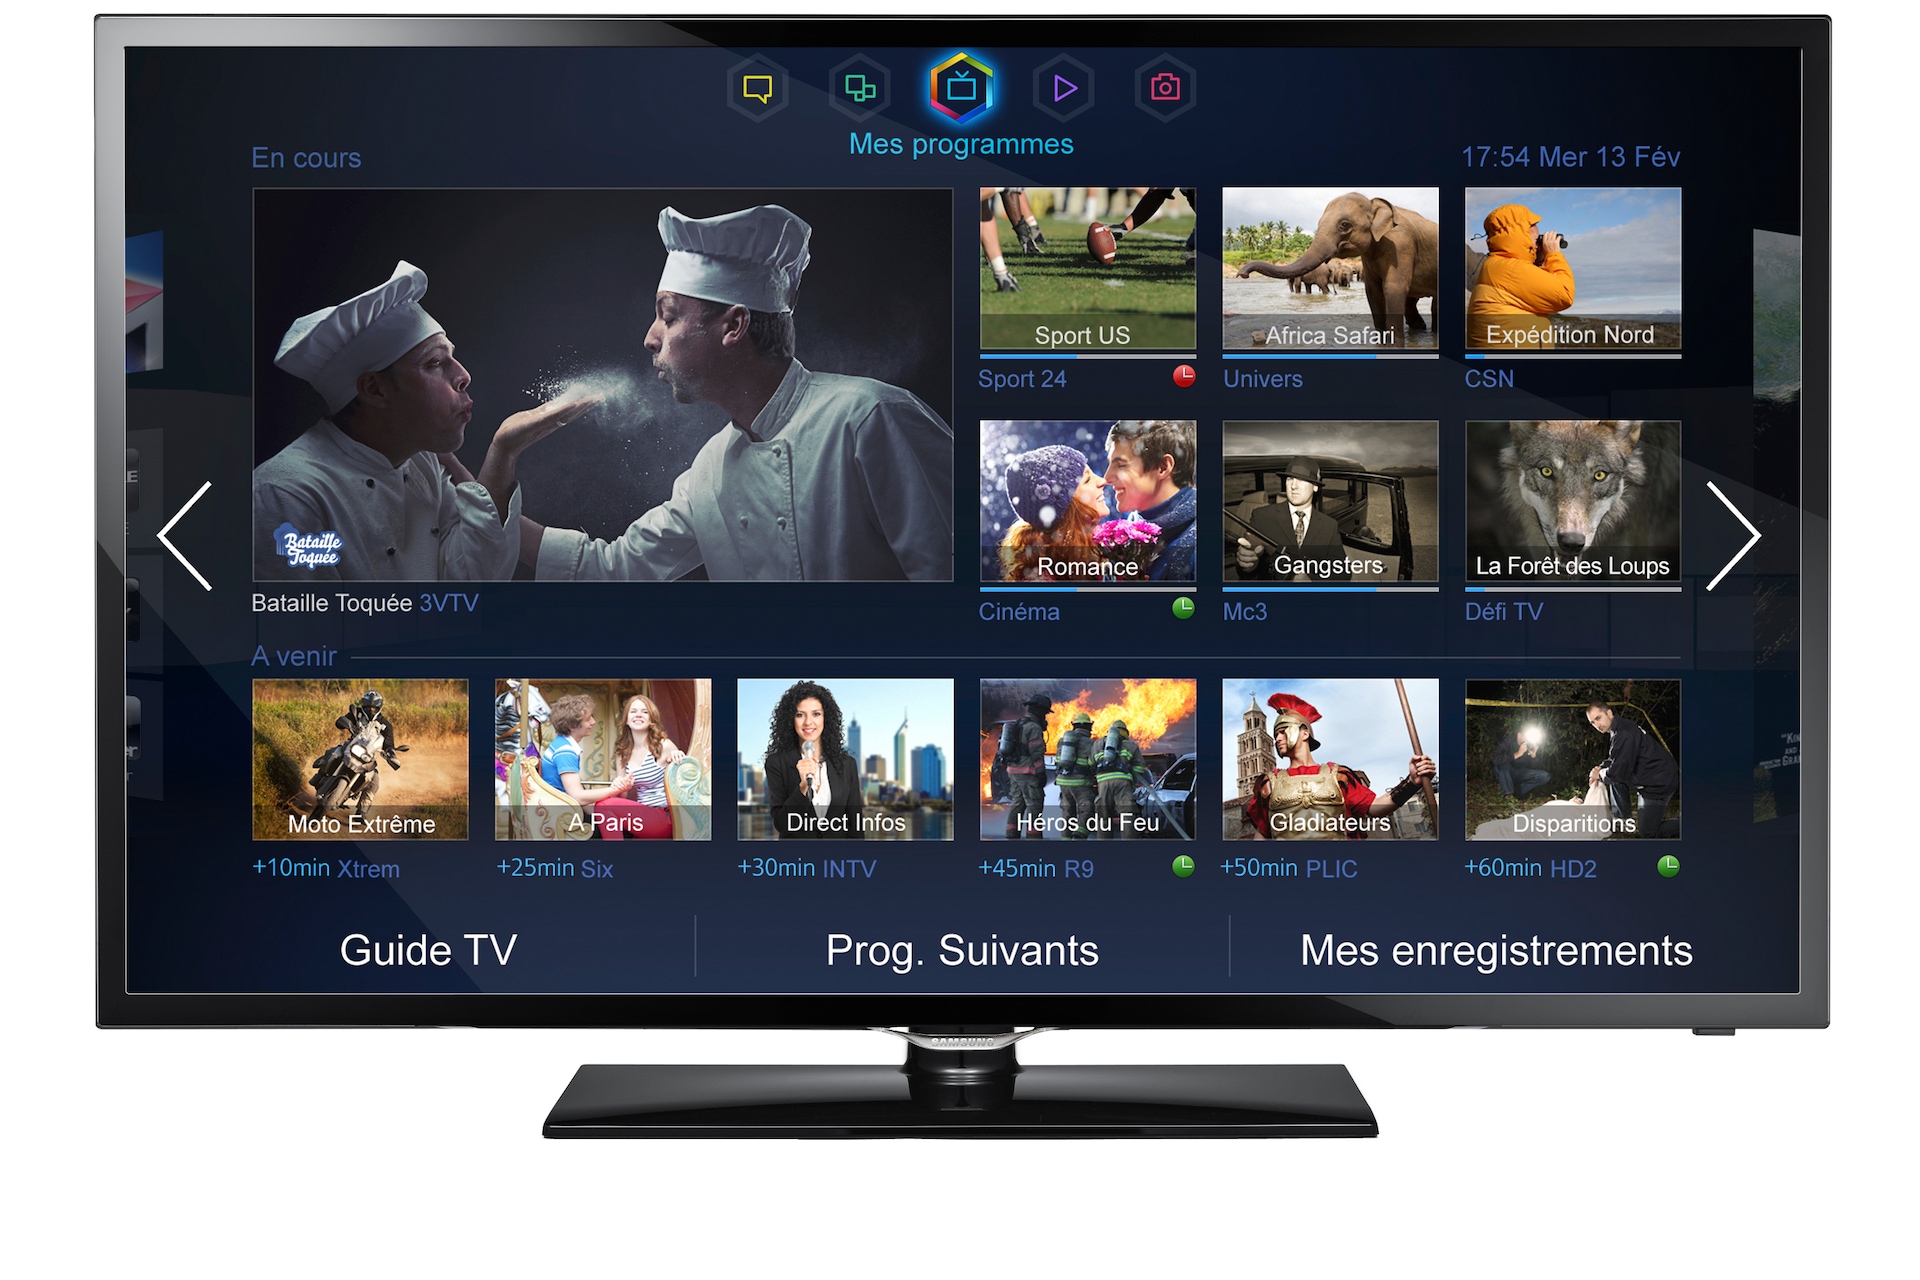 Samsung Ue42f5300 Tv Led 42 Full Hd Smart Tv S Recommandation